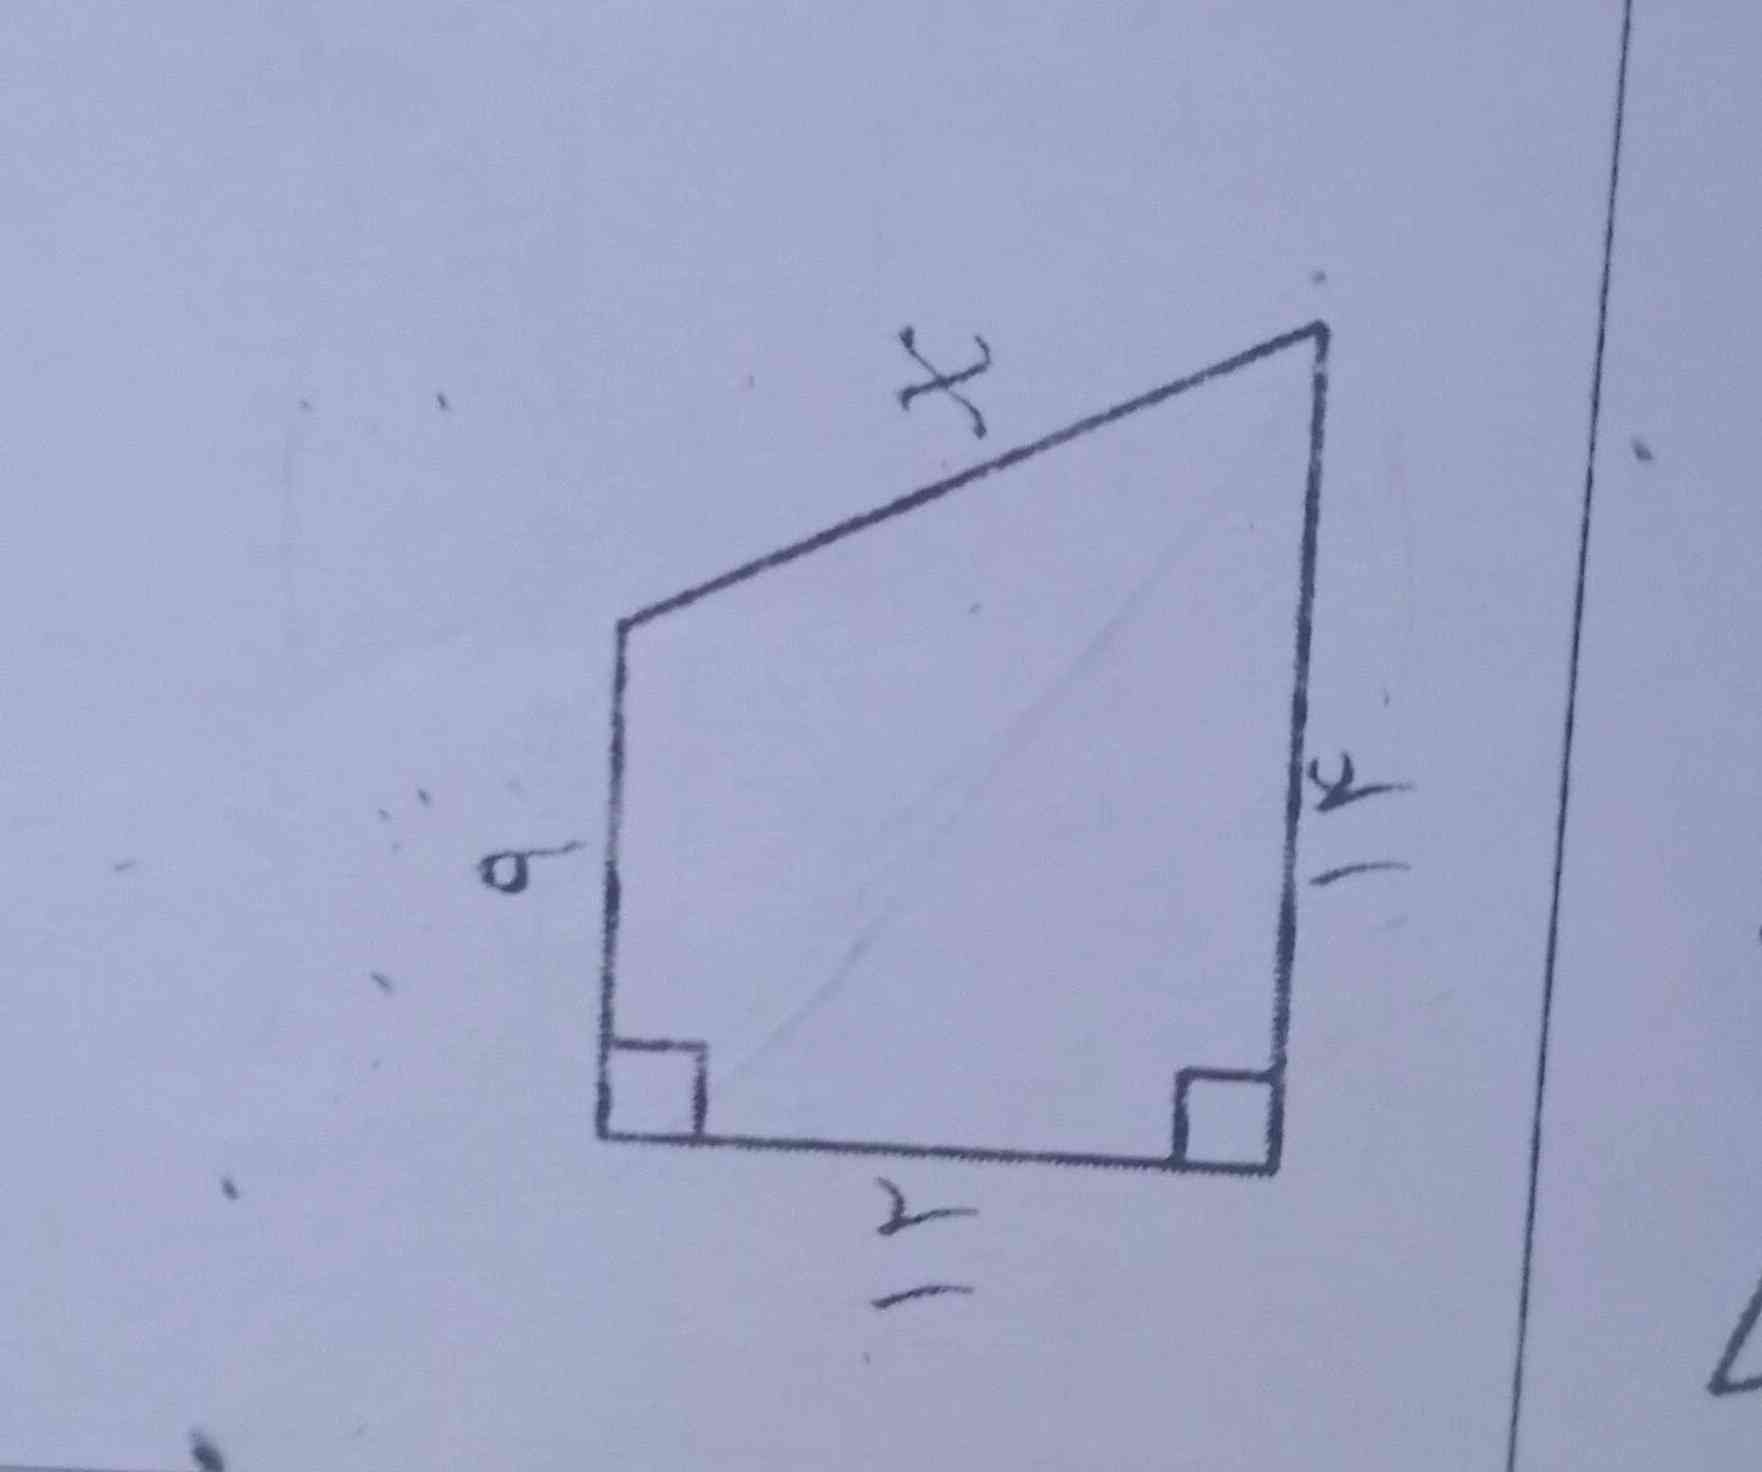 x رو چطور پیدا کنیم؟تاج میدممم